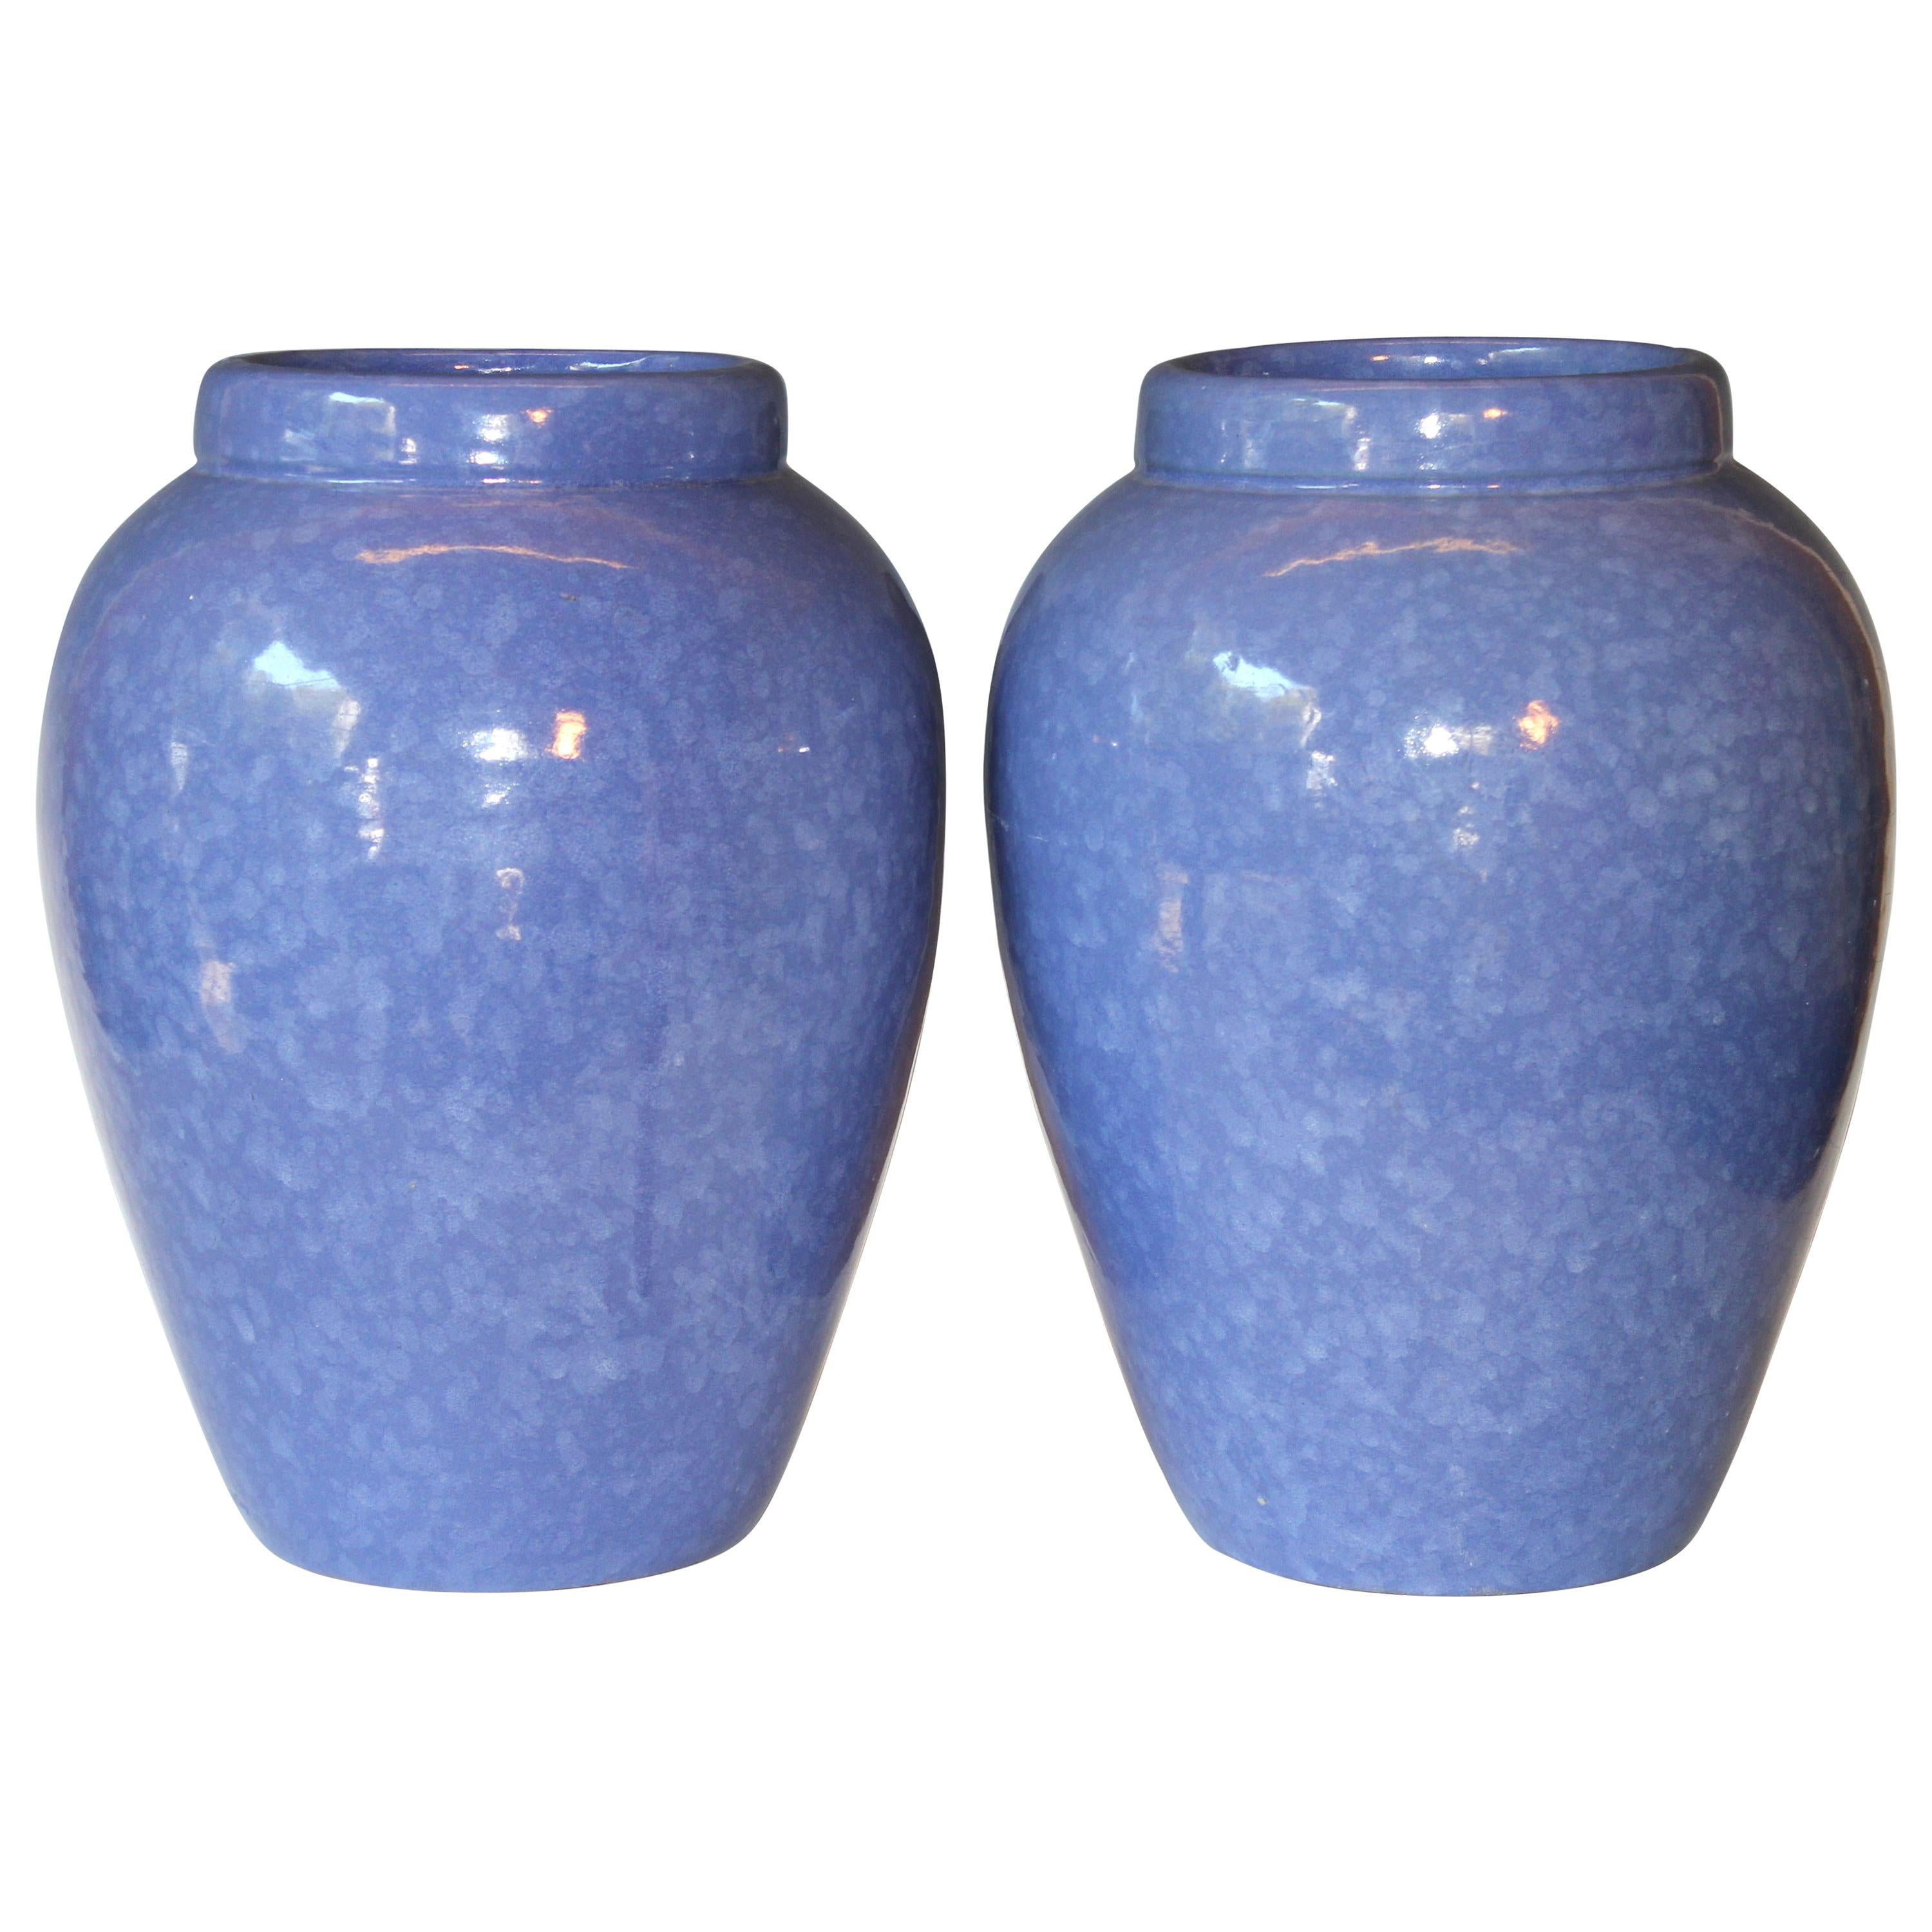 RRP CO Oil Jars McCoy Vases Mottled Blue Large Vintage Floor Pottery Urns, Pair